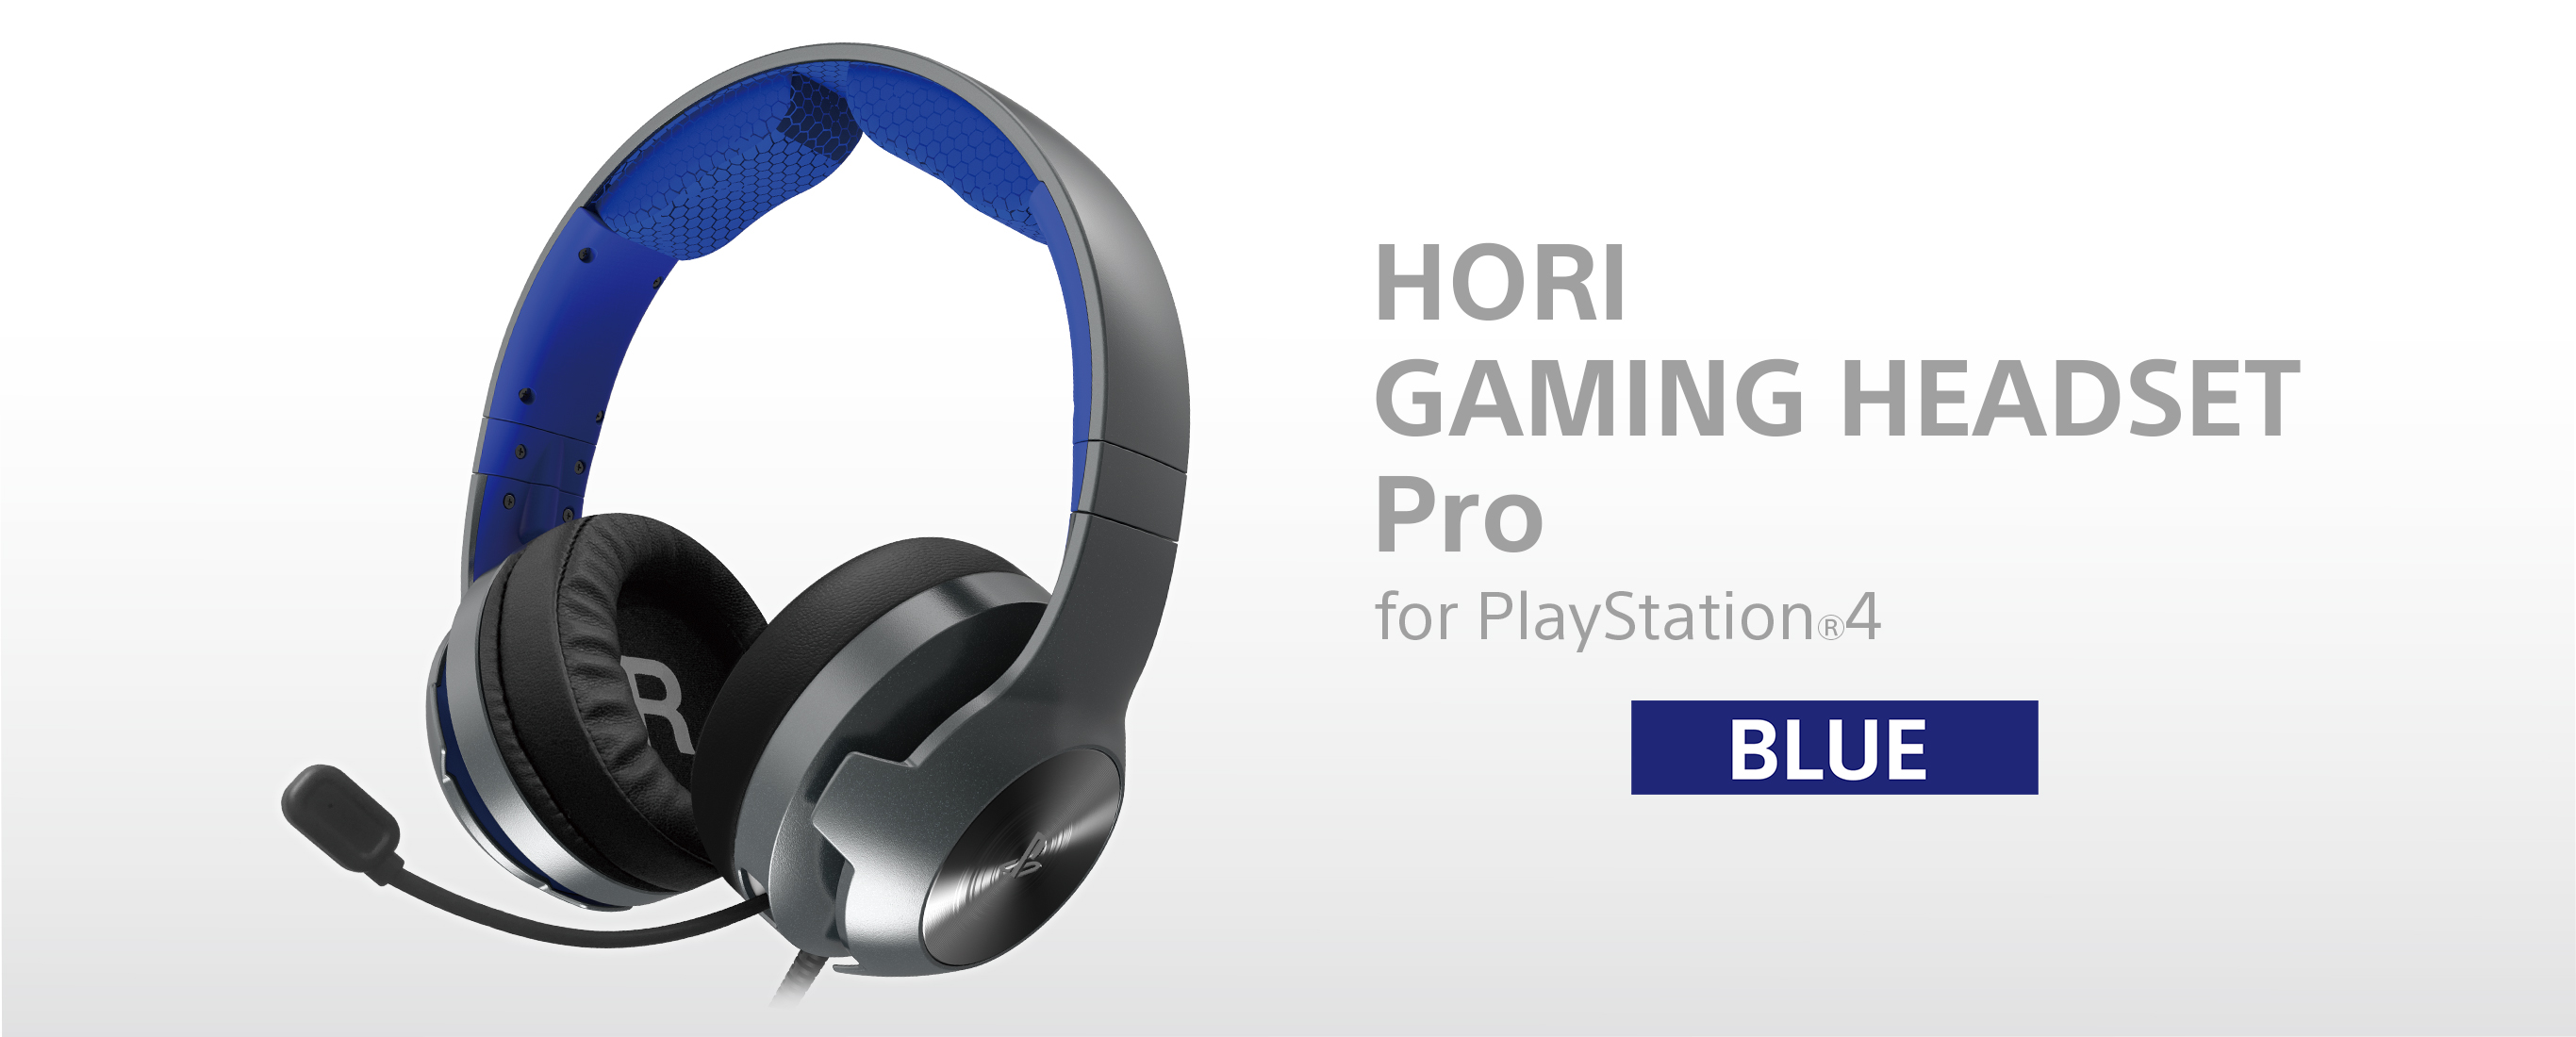 HORI ゲーミングヘッドセットプロ for PlayStation4 ブラック